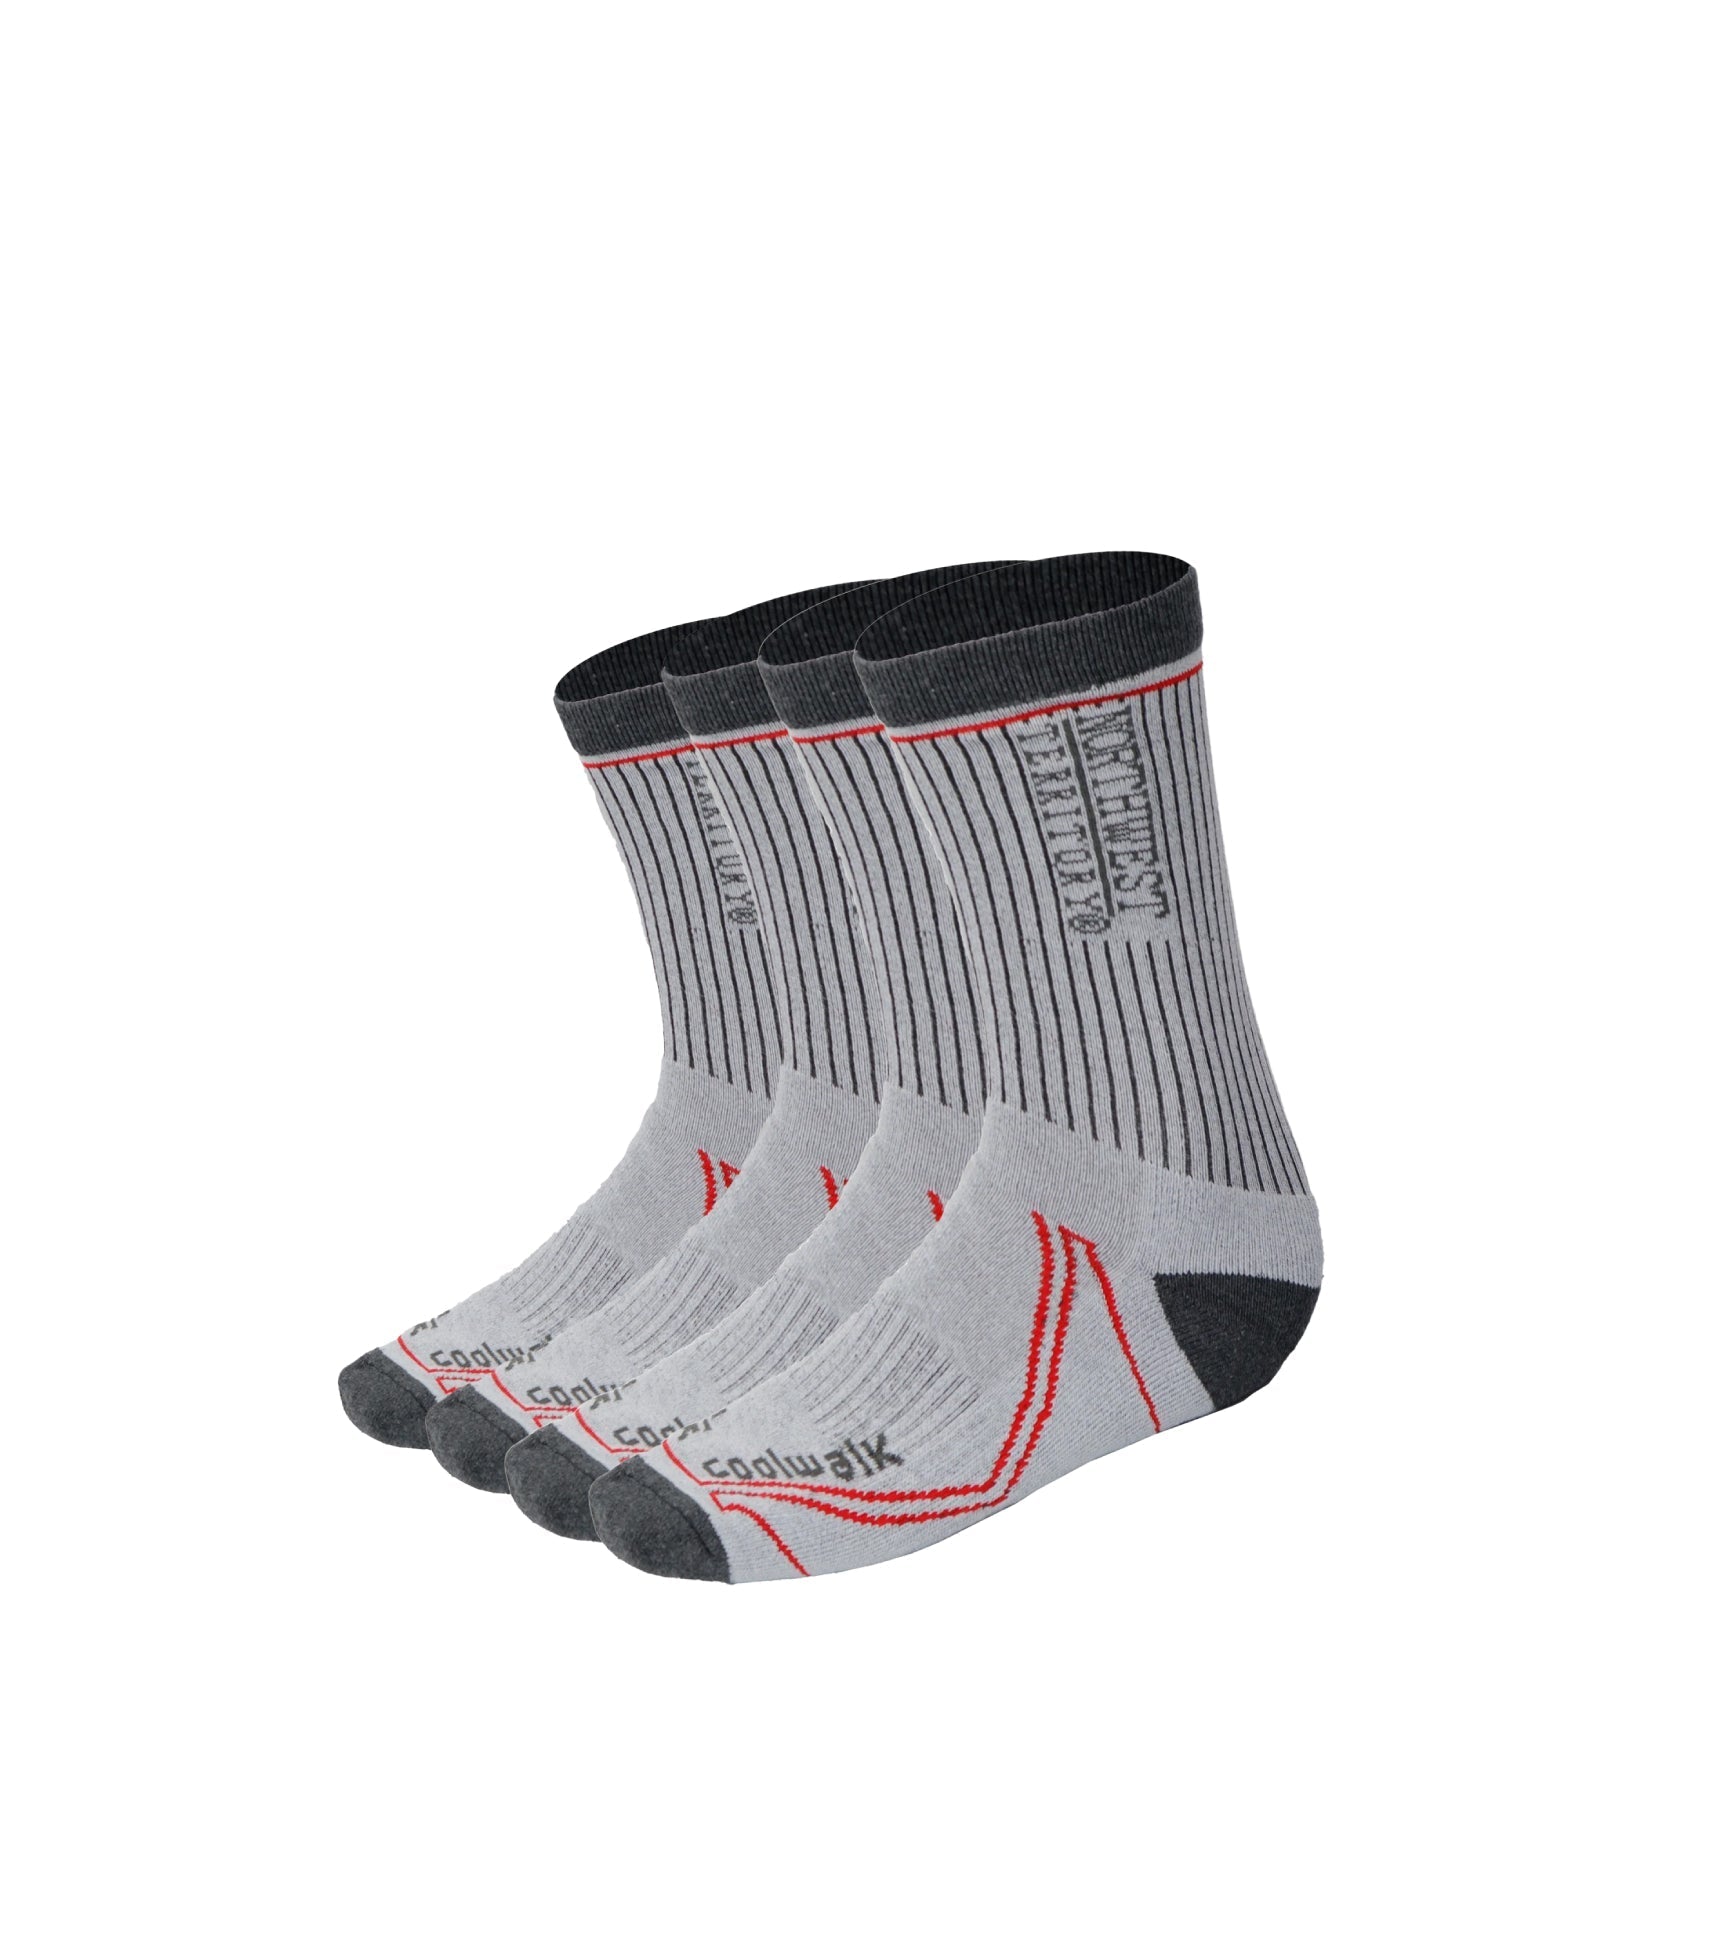 Men's Socks pack of 2